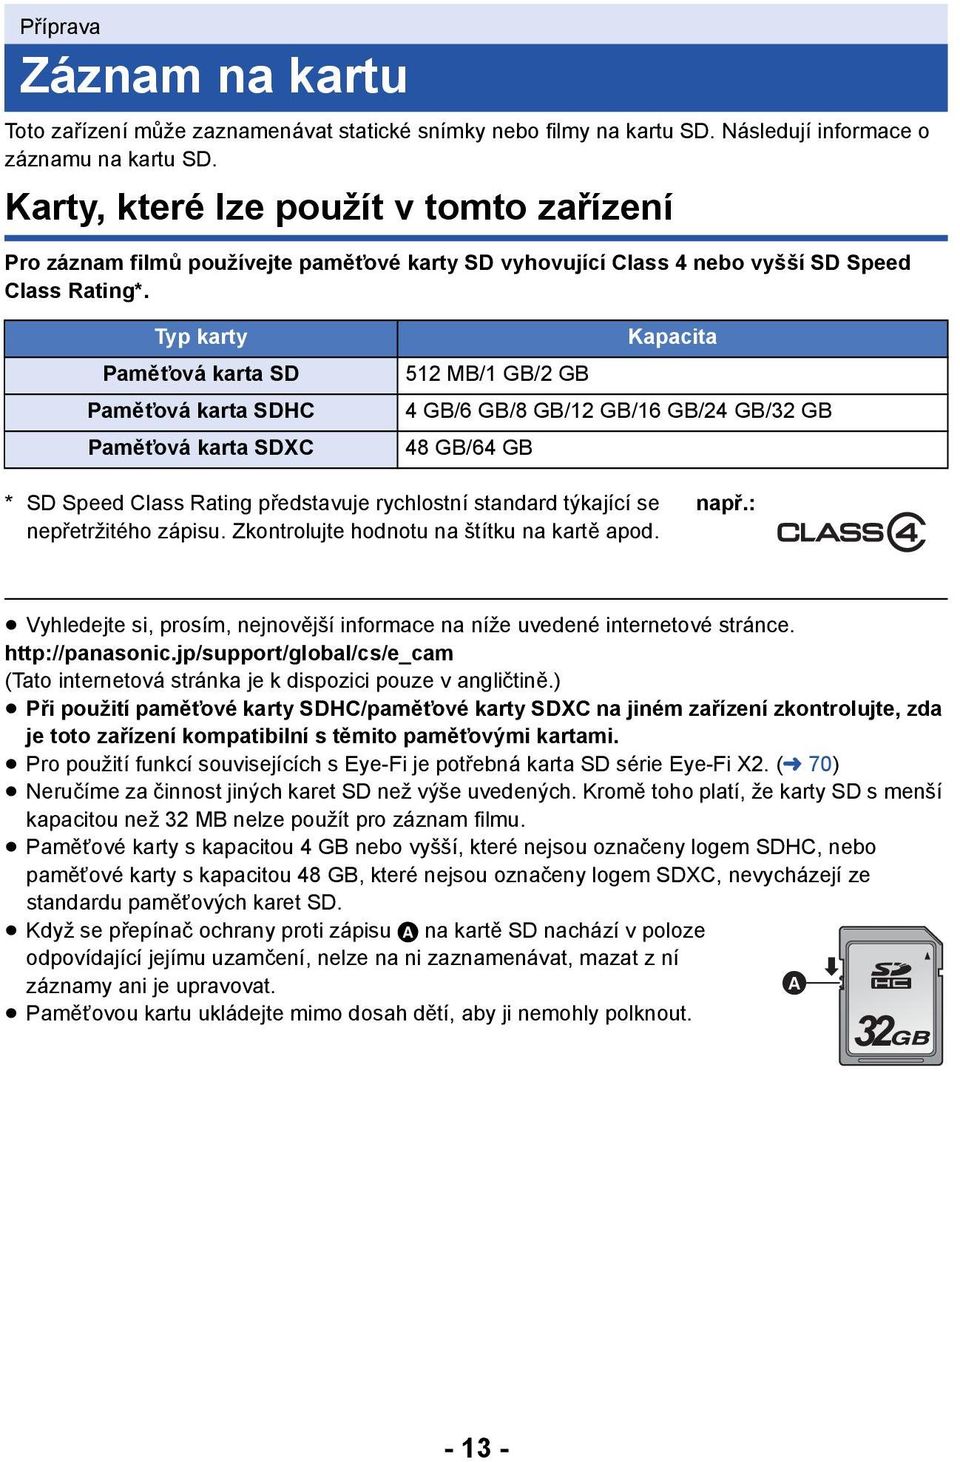 Typ karty Paměťová karta SD Paměťová karta SDHC Paměťová karta SDXC Kapacita 512MB/1GB/2GB 4GB/6GB/8GB/12GB/16GB/24GB/32GB 48 GB/64 GB * SD Speed Class Rating představuje rychlostní standard týkající